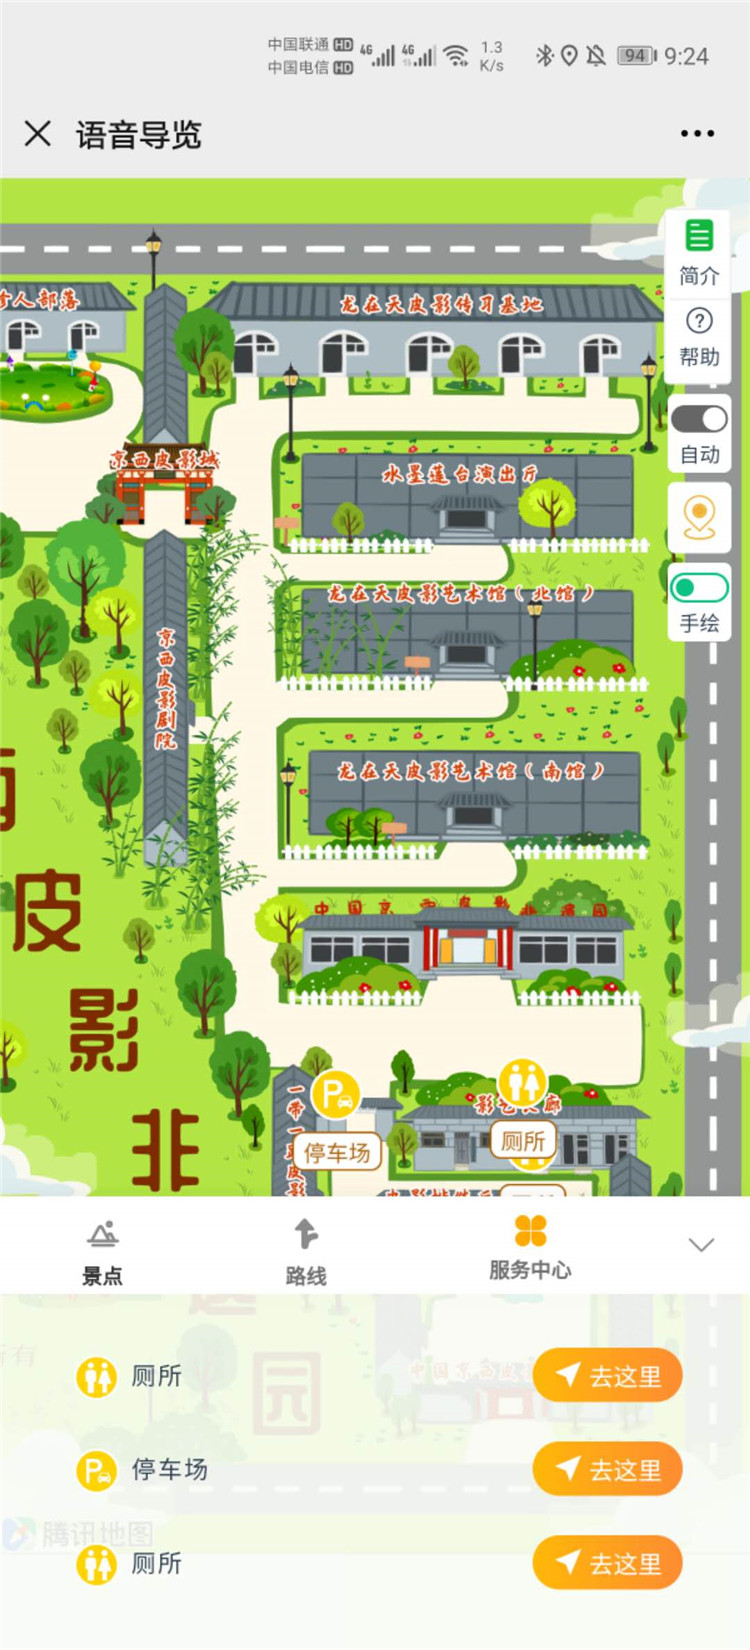 北京京西皮影vr全景、手绘地图、智能导览制作多少钱，案例展示.jpg